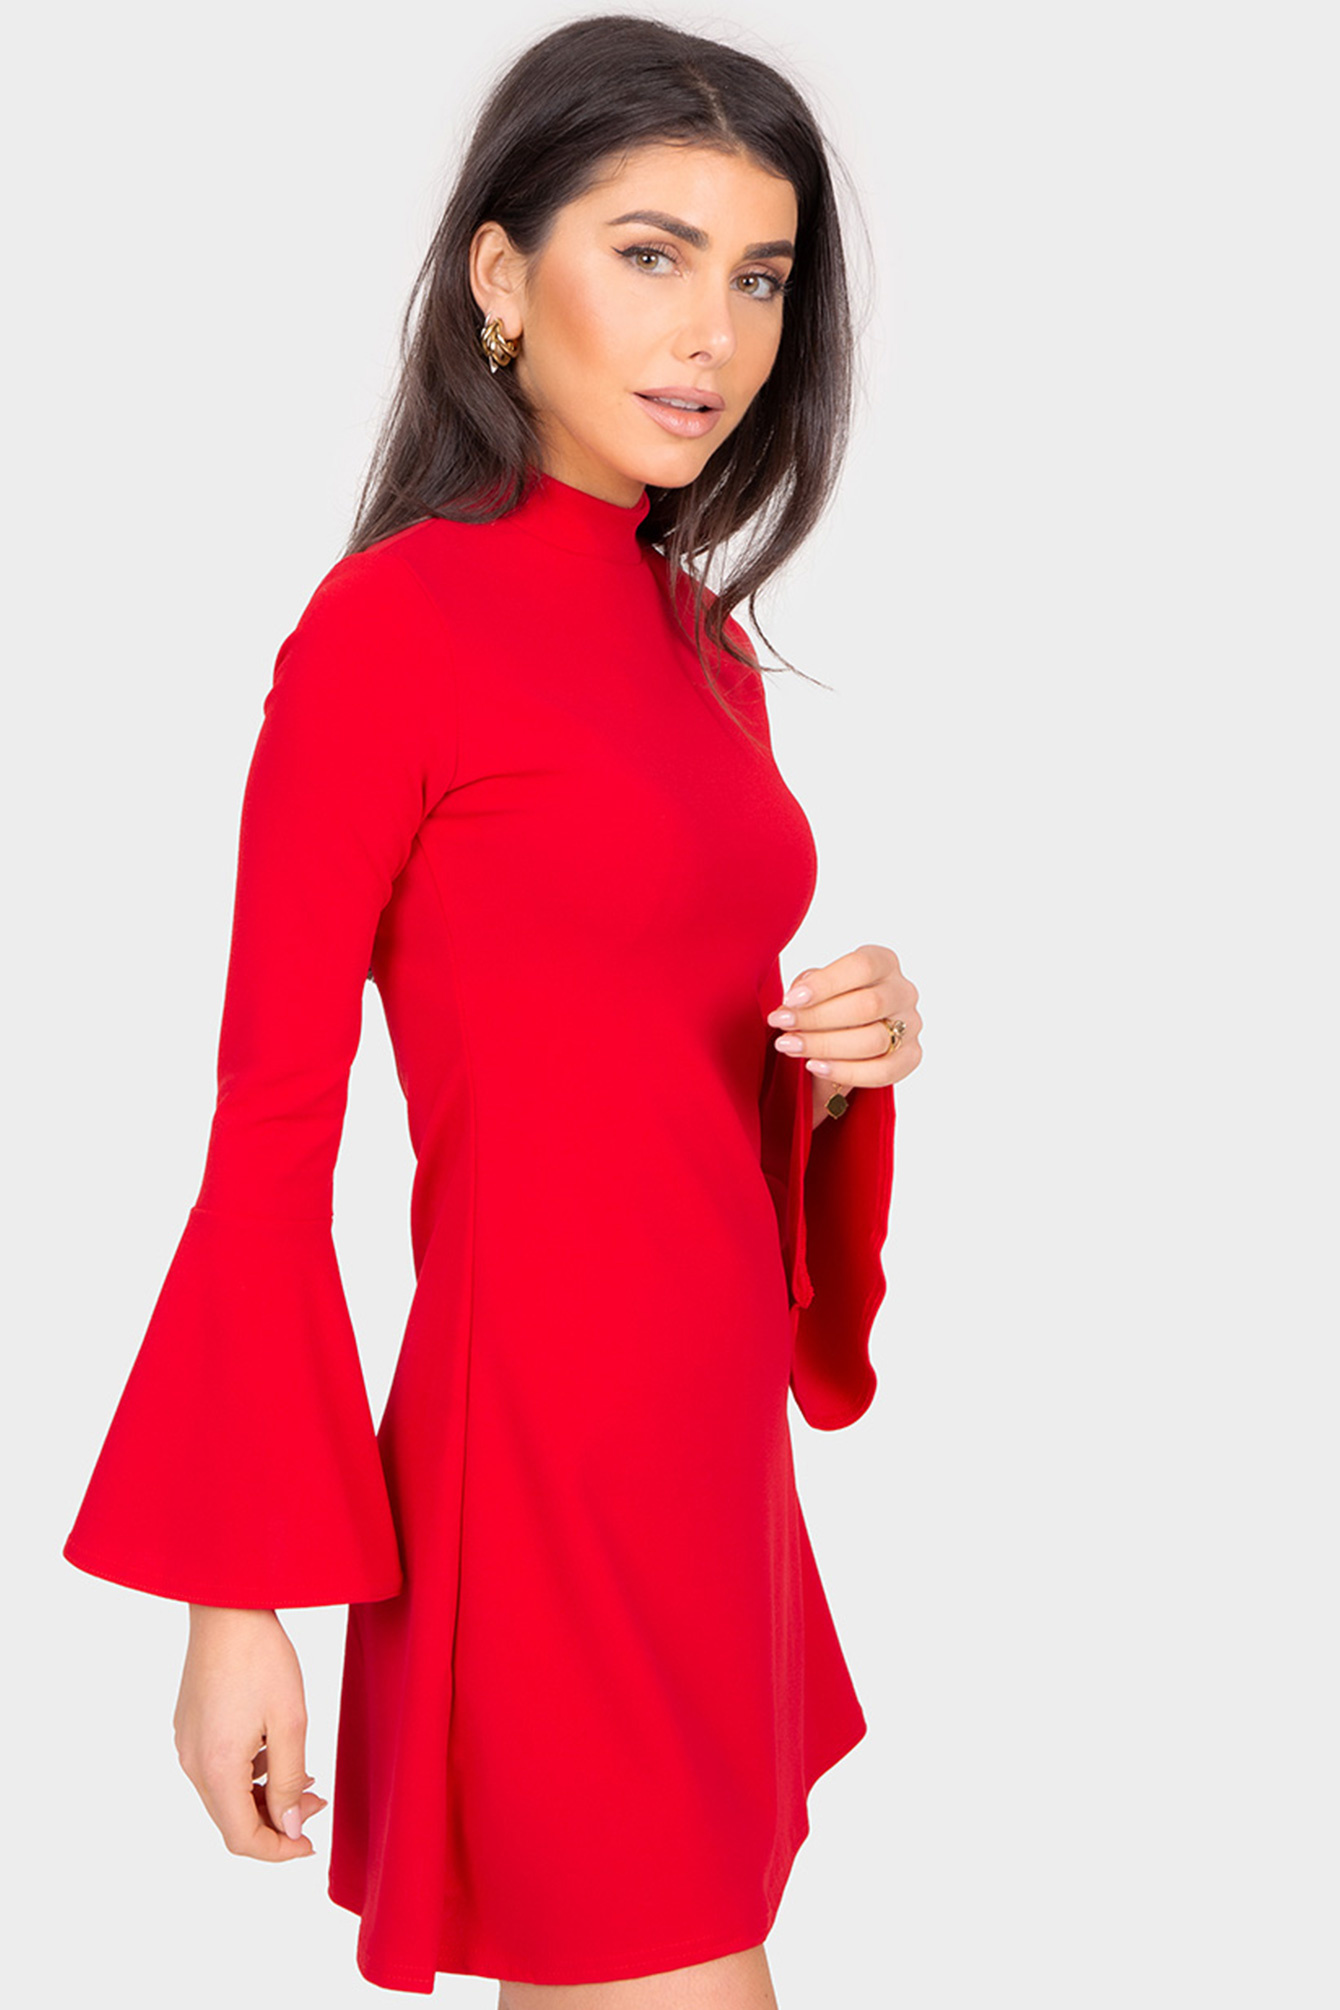 opvolger Dageraad Terughoudendheid Shop RED CHARMER Rode flarred jurk | Elise Store - Elise Store